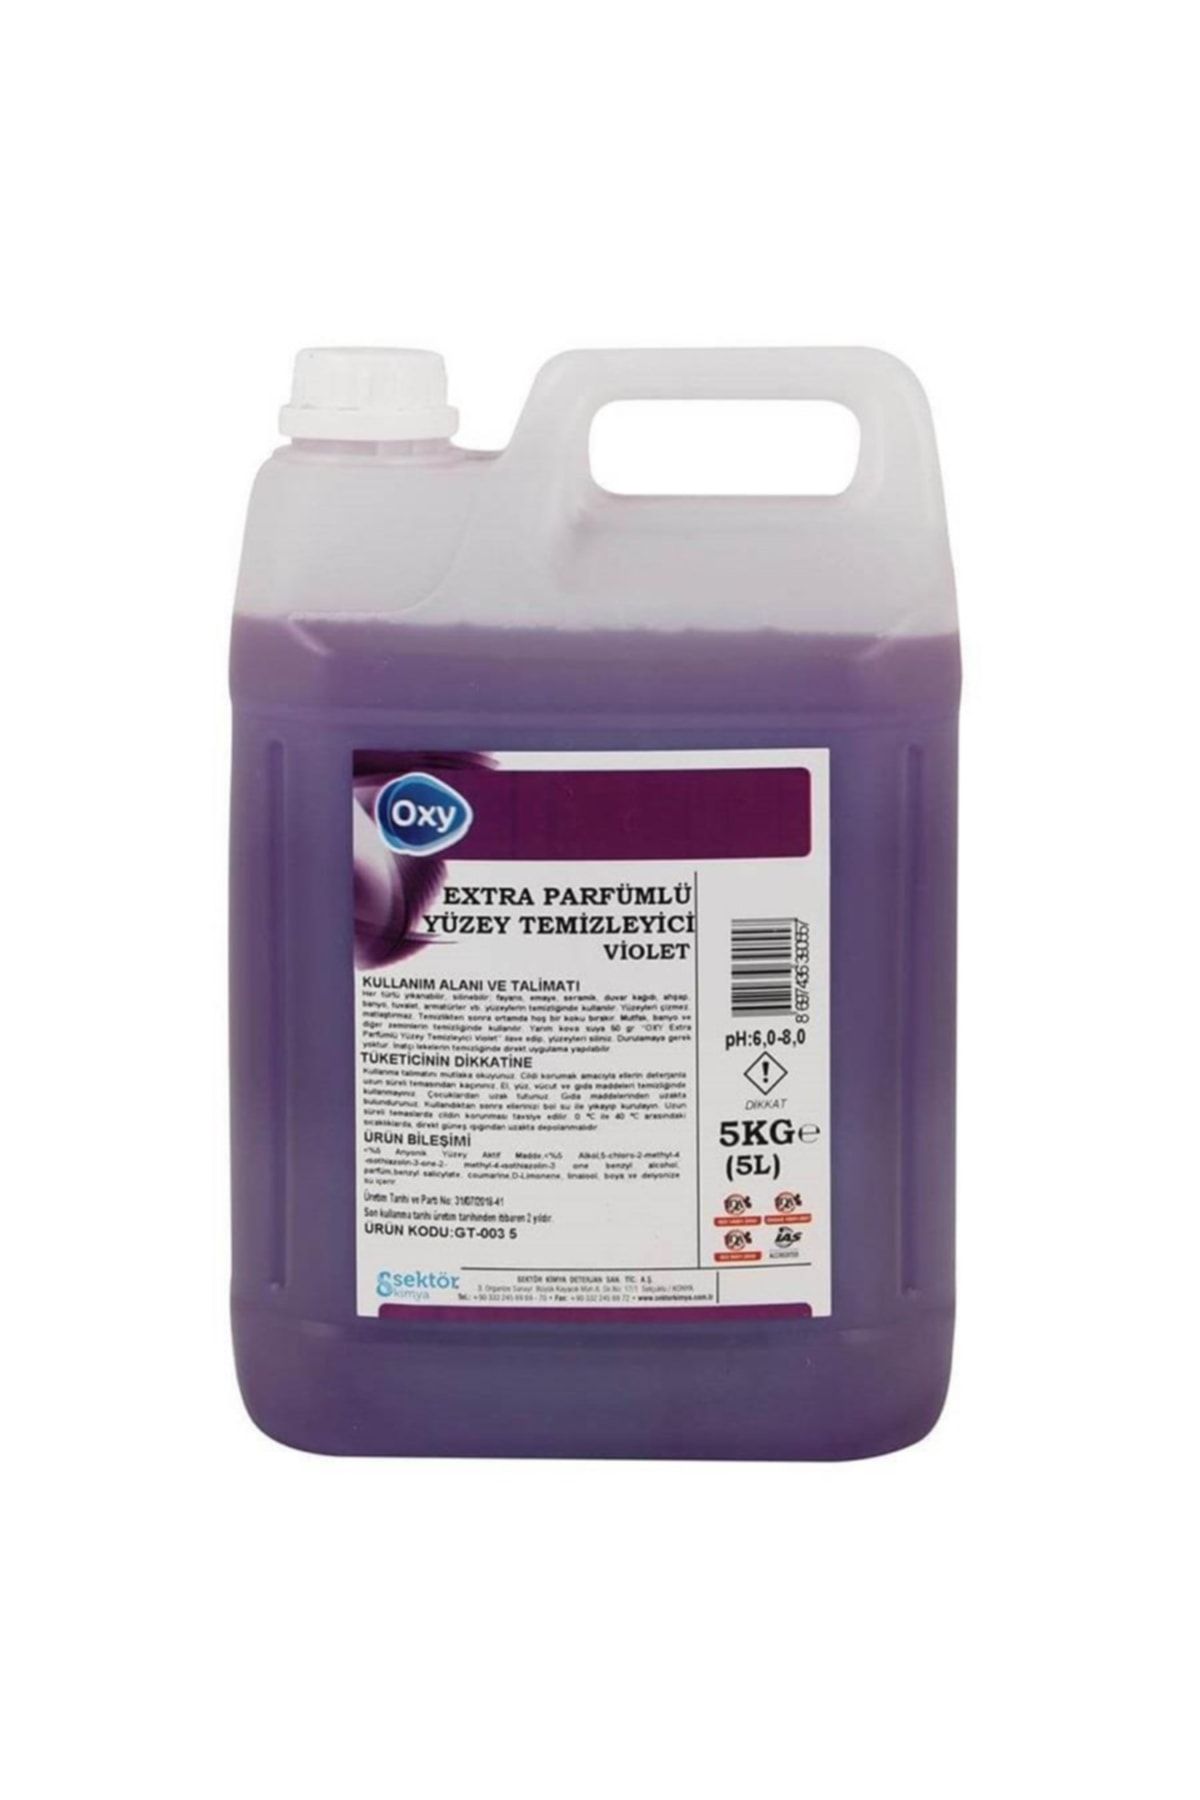 Oxy Parfümlü Yüzey Temizleyici Mor/violet 5 Kg